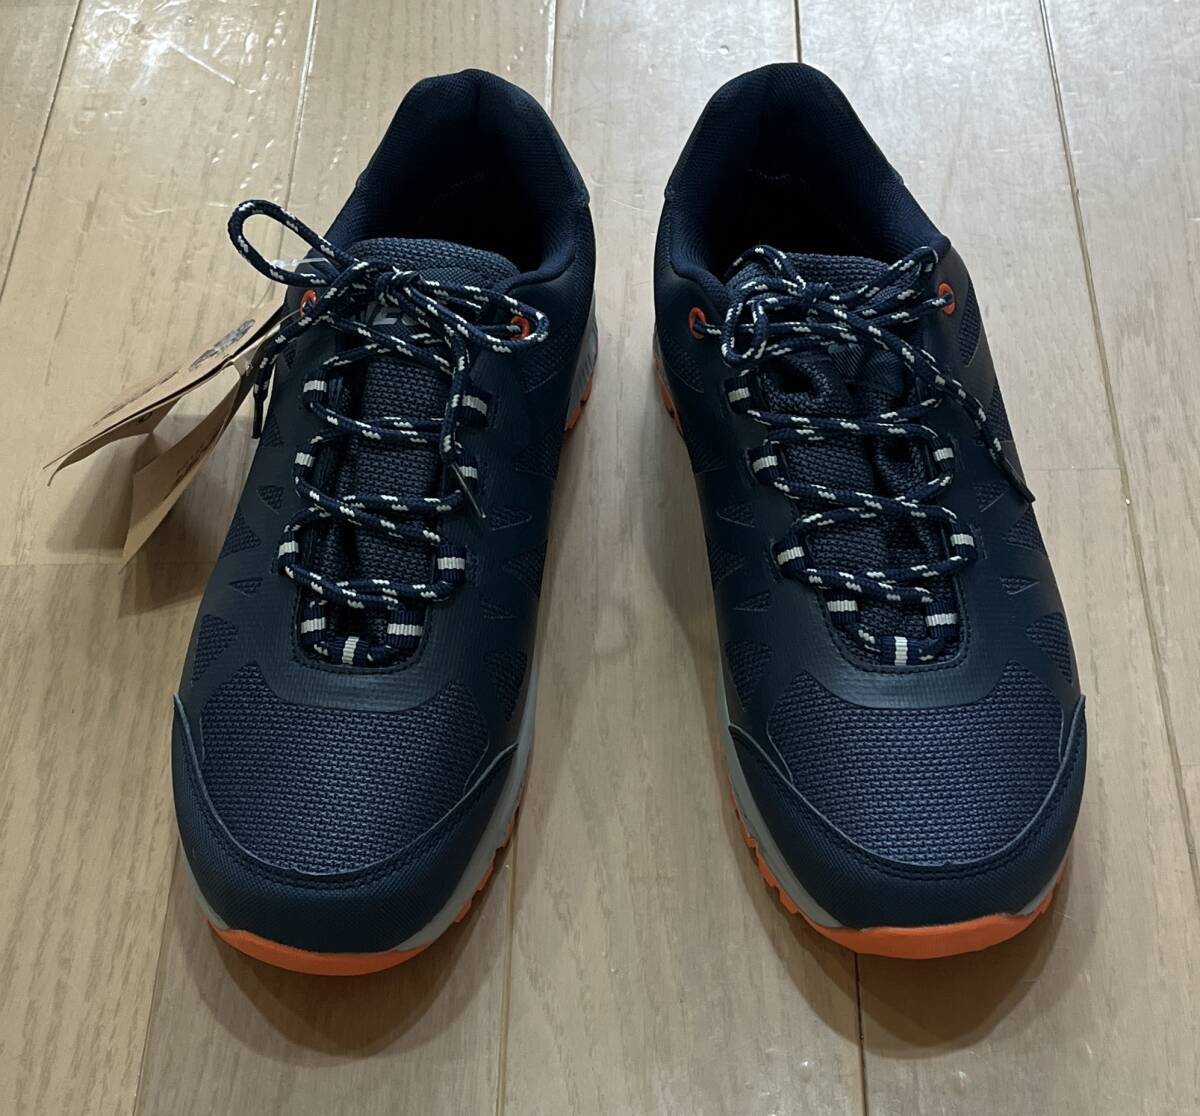  new goods 4418 England HI-TEC waterproof waterproof light weight trekking shoes multi grip sole 43 27.5. corresponding 